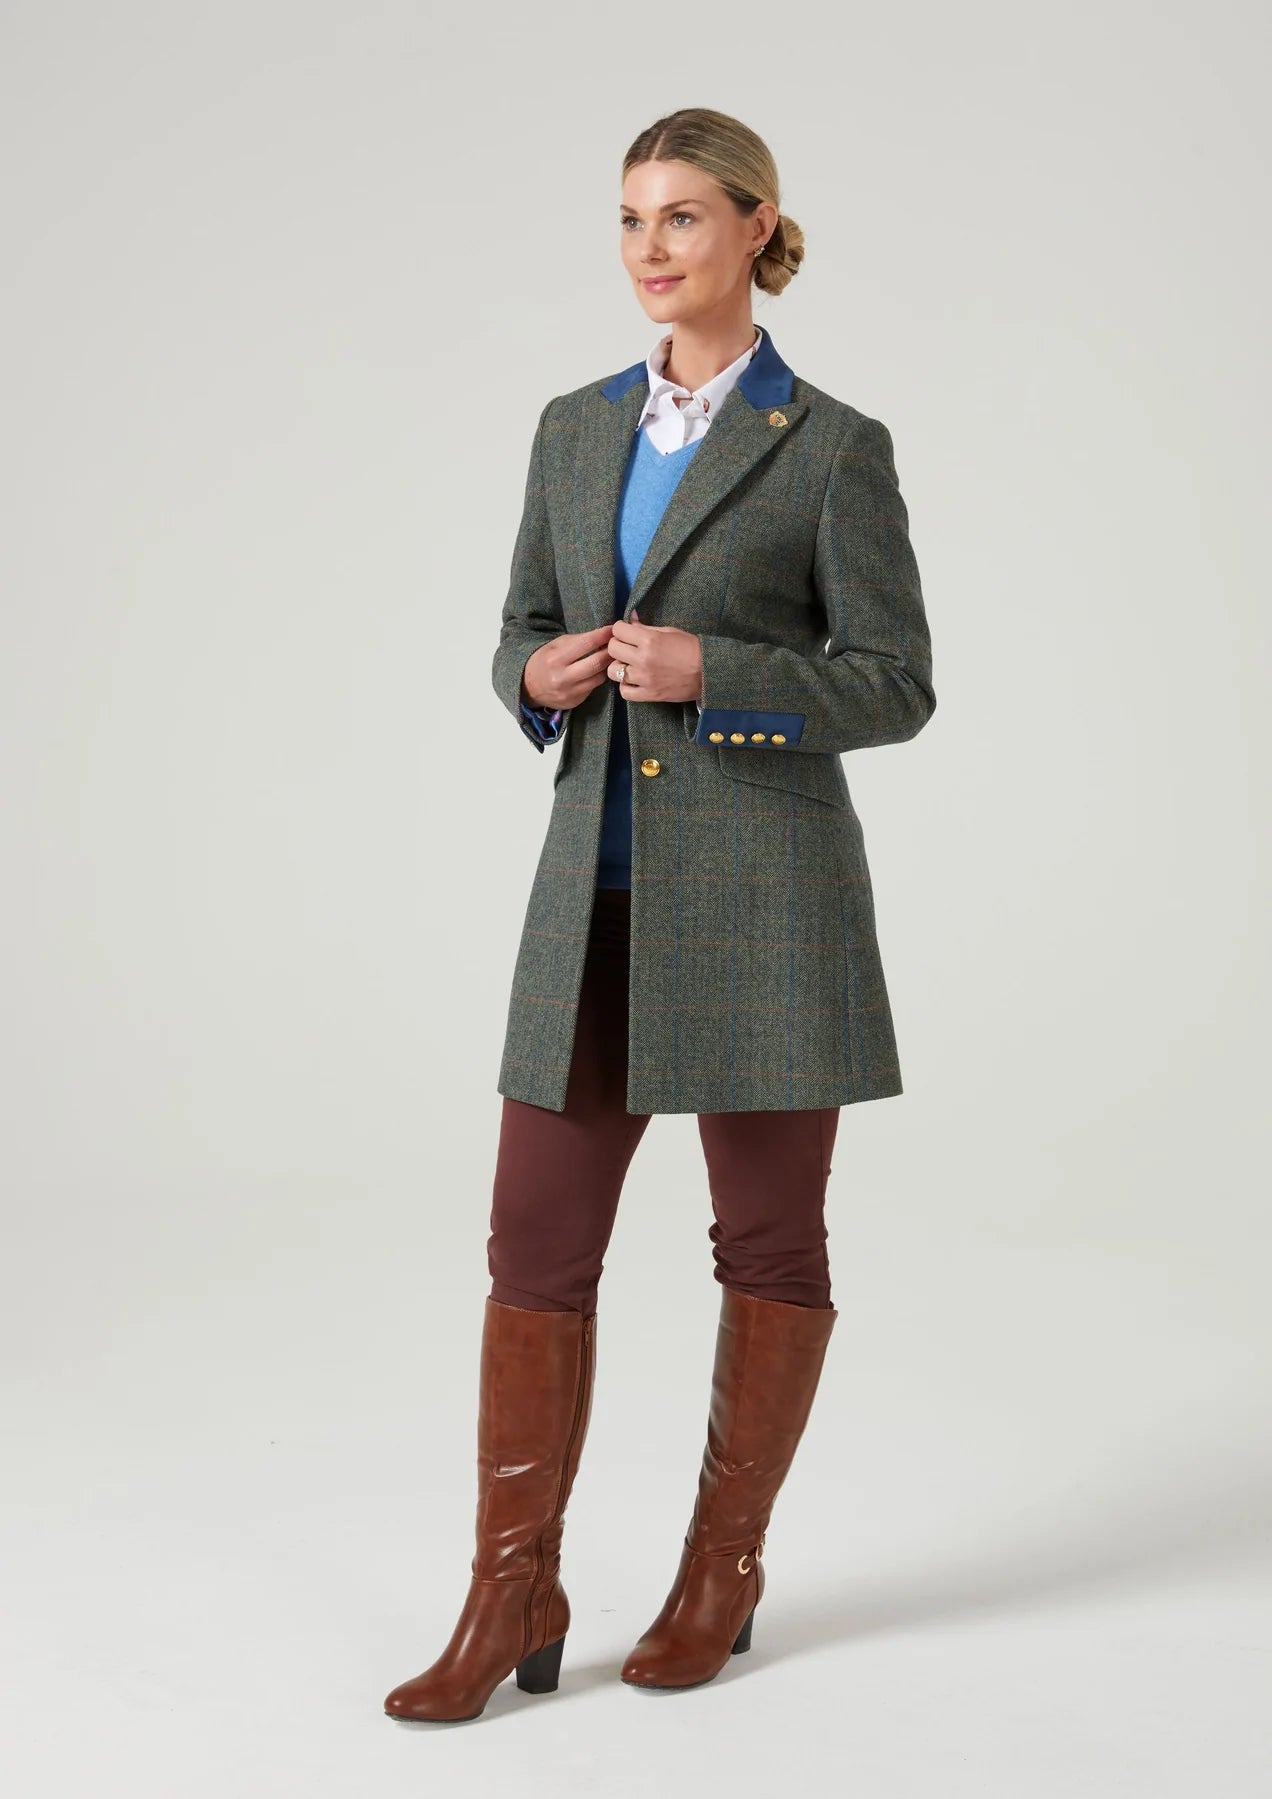 Combrook Tweed Women's Mid-Size Shooting Coat